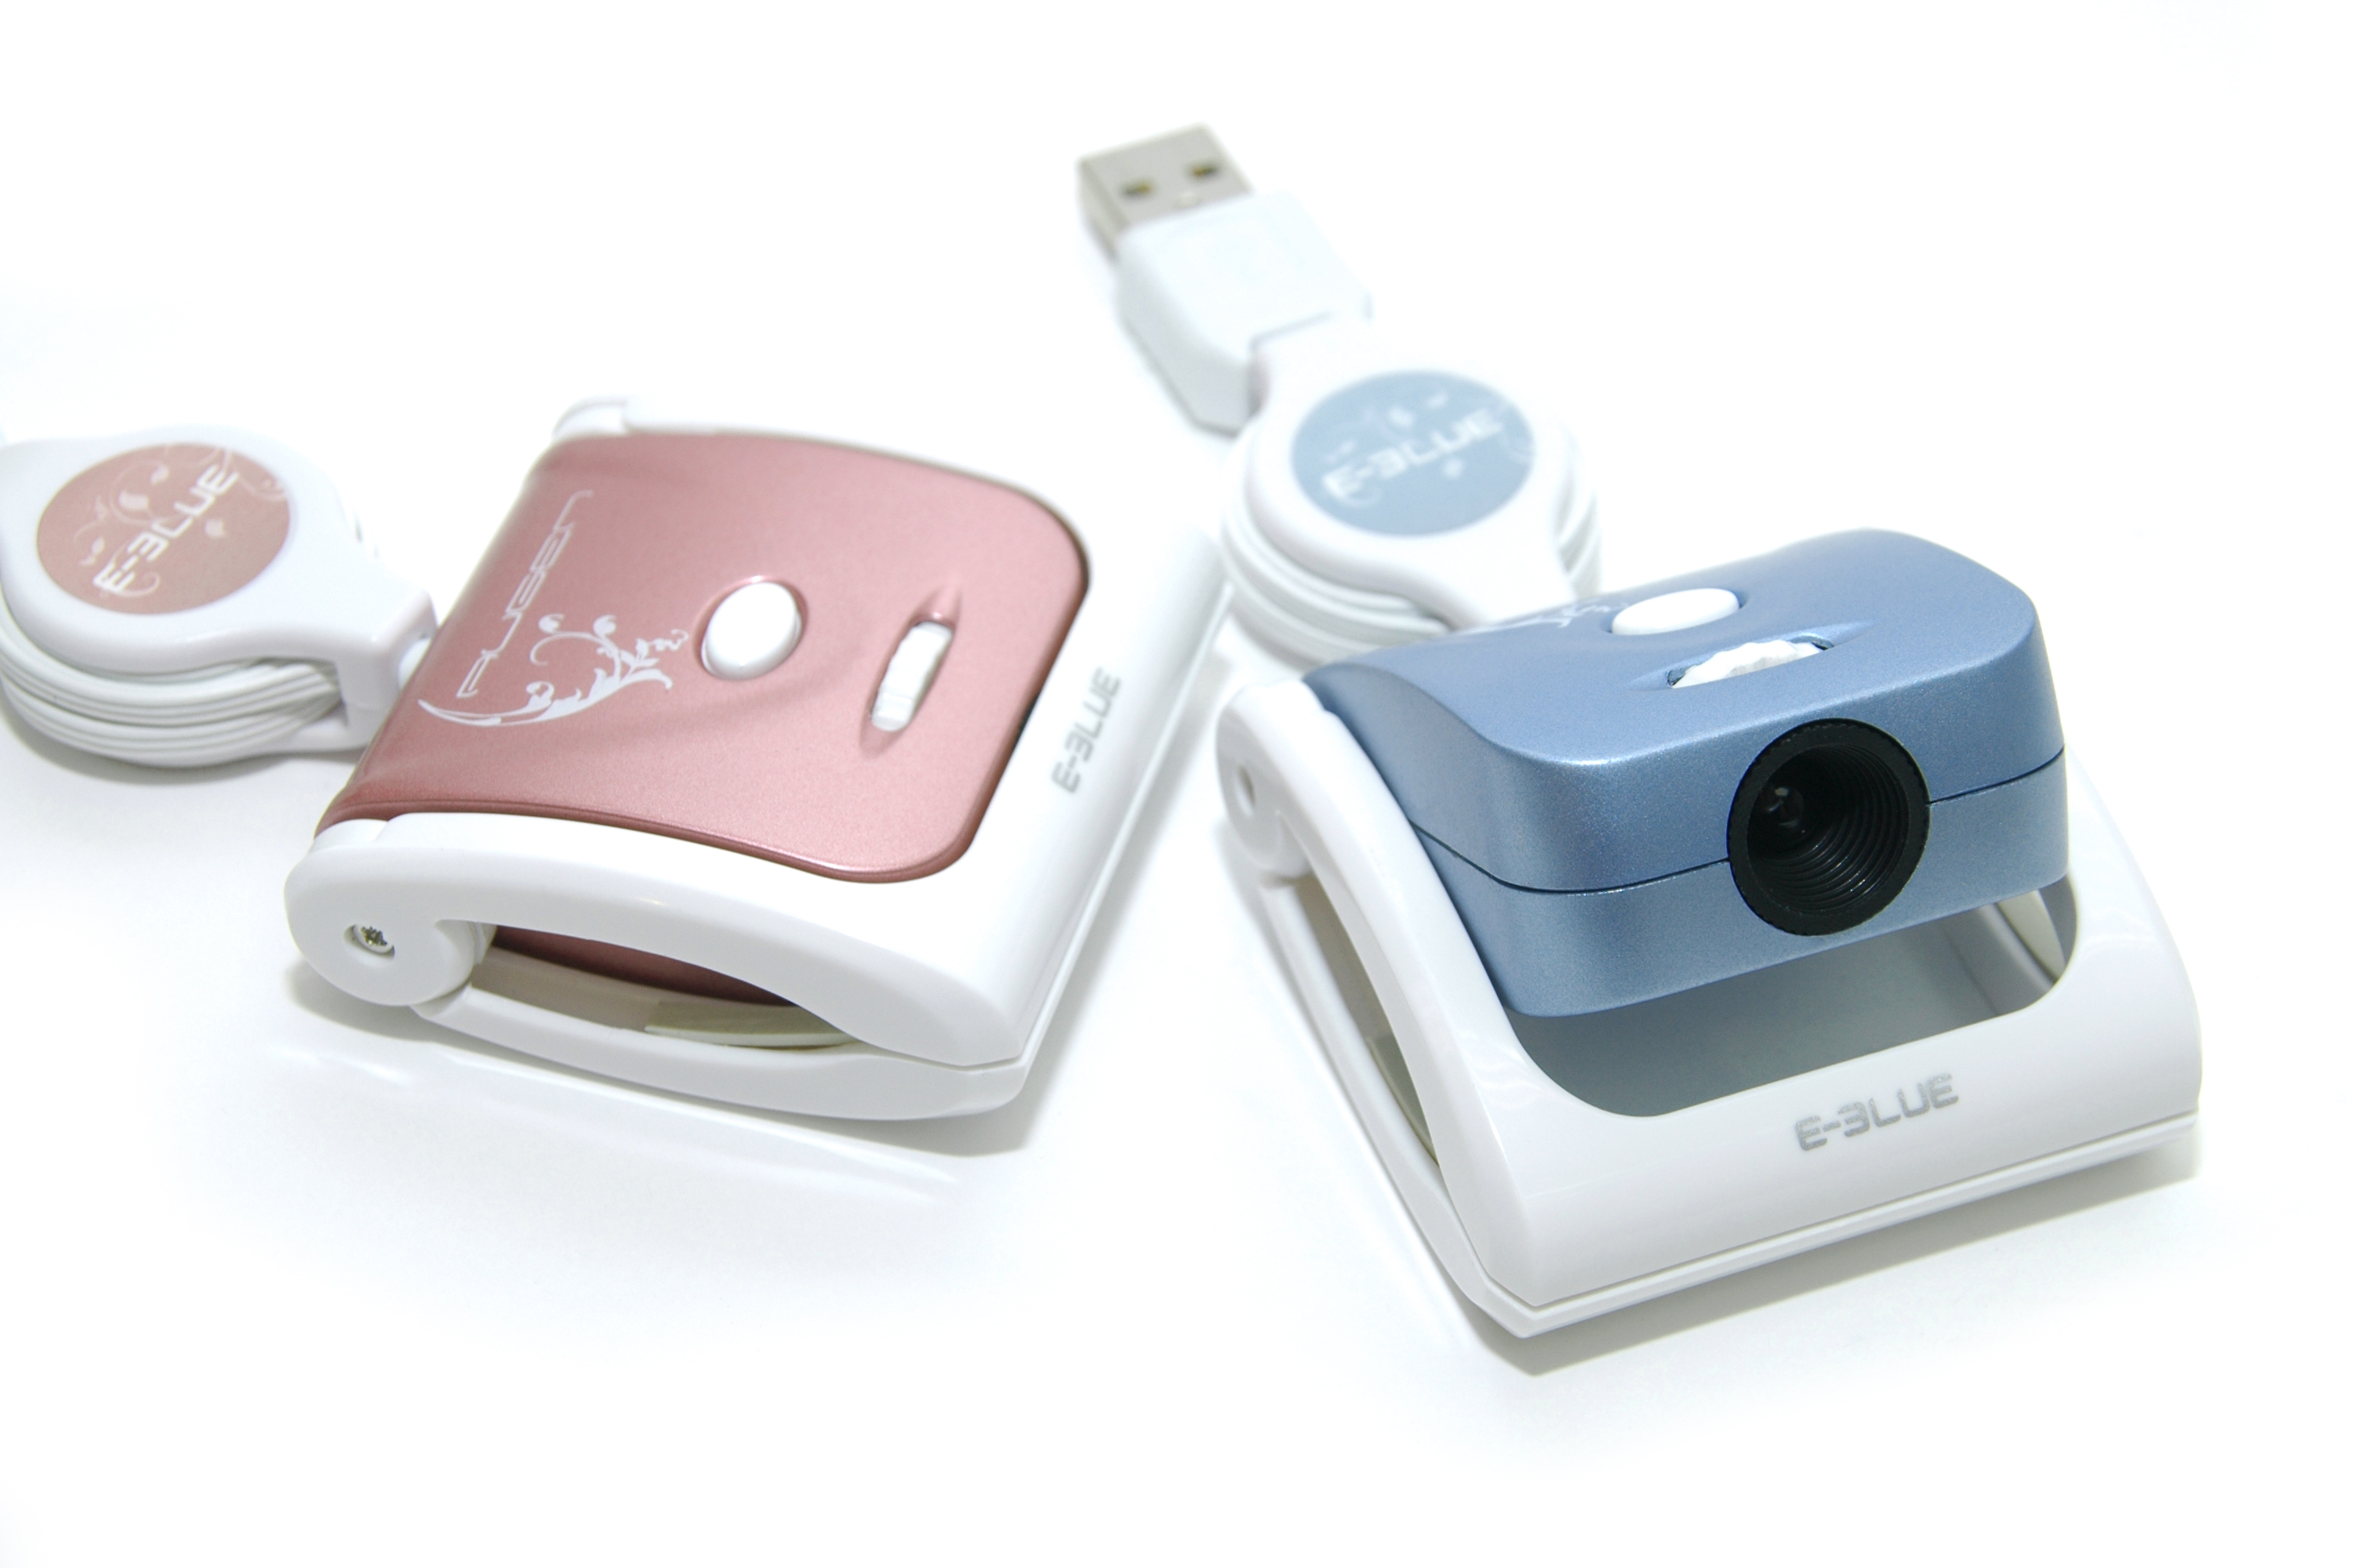 USB вебкамера Augen Retractable USB Webcam